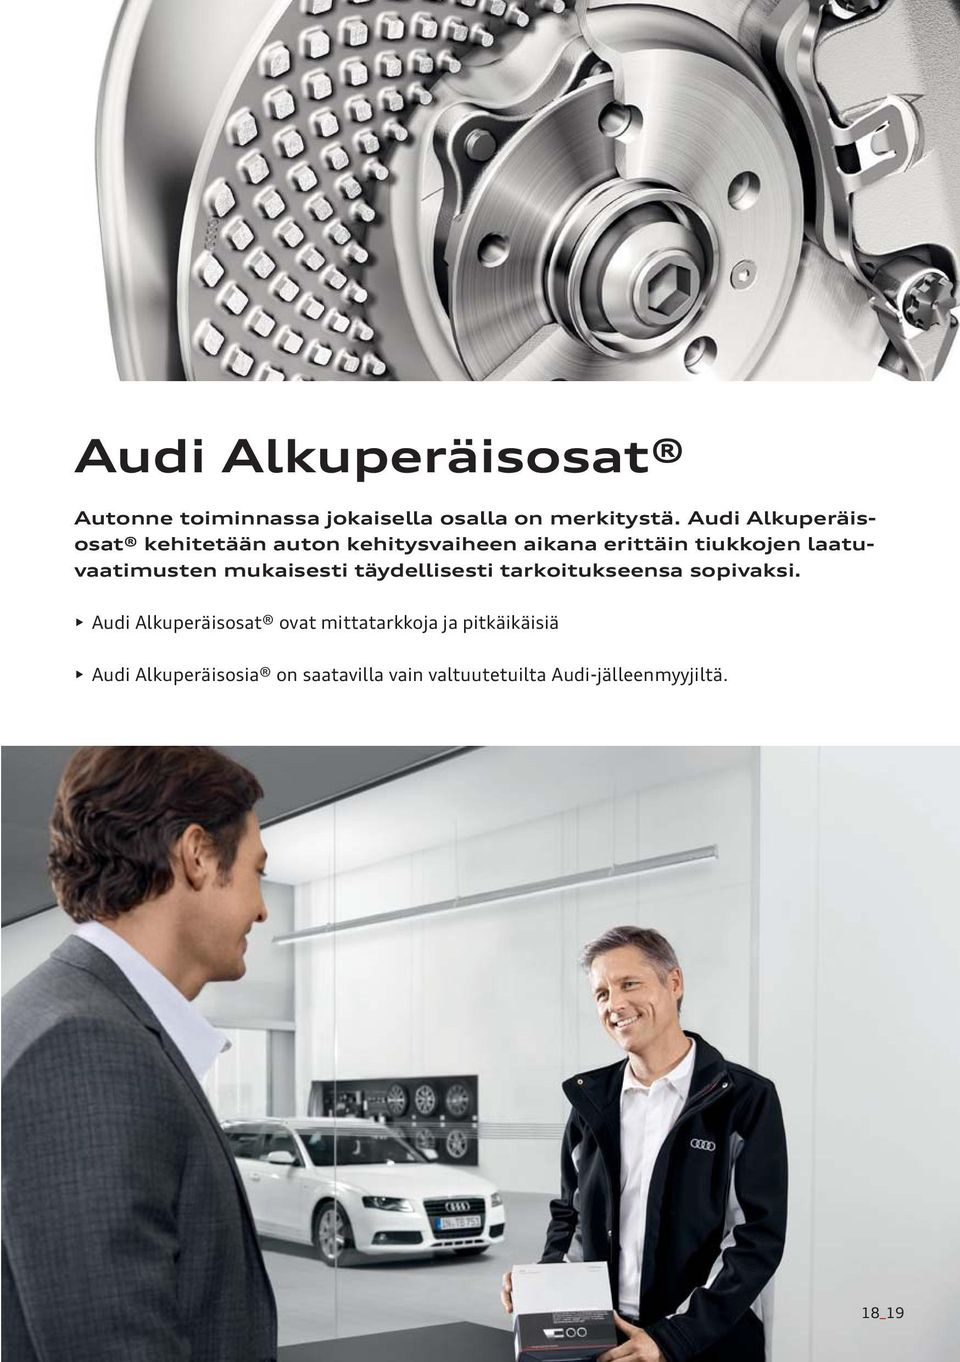 Audi Alkuperäisosat kehitetään auton kehitysvaiheen